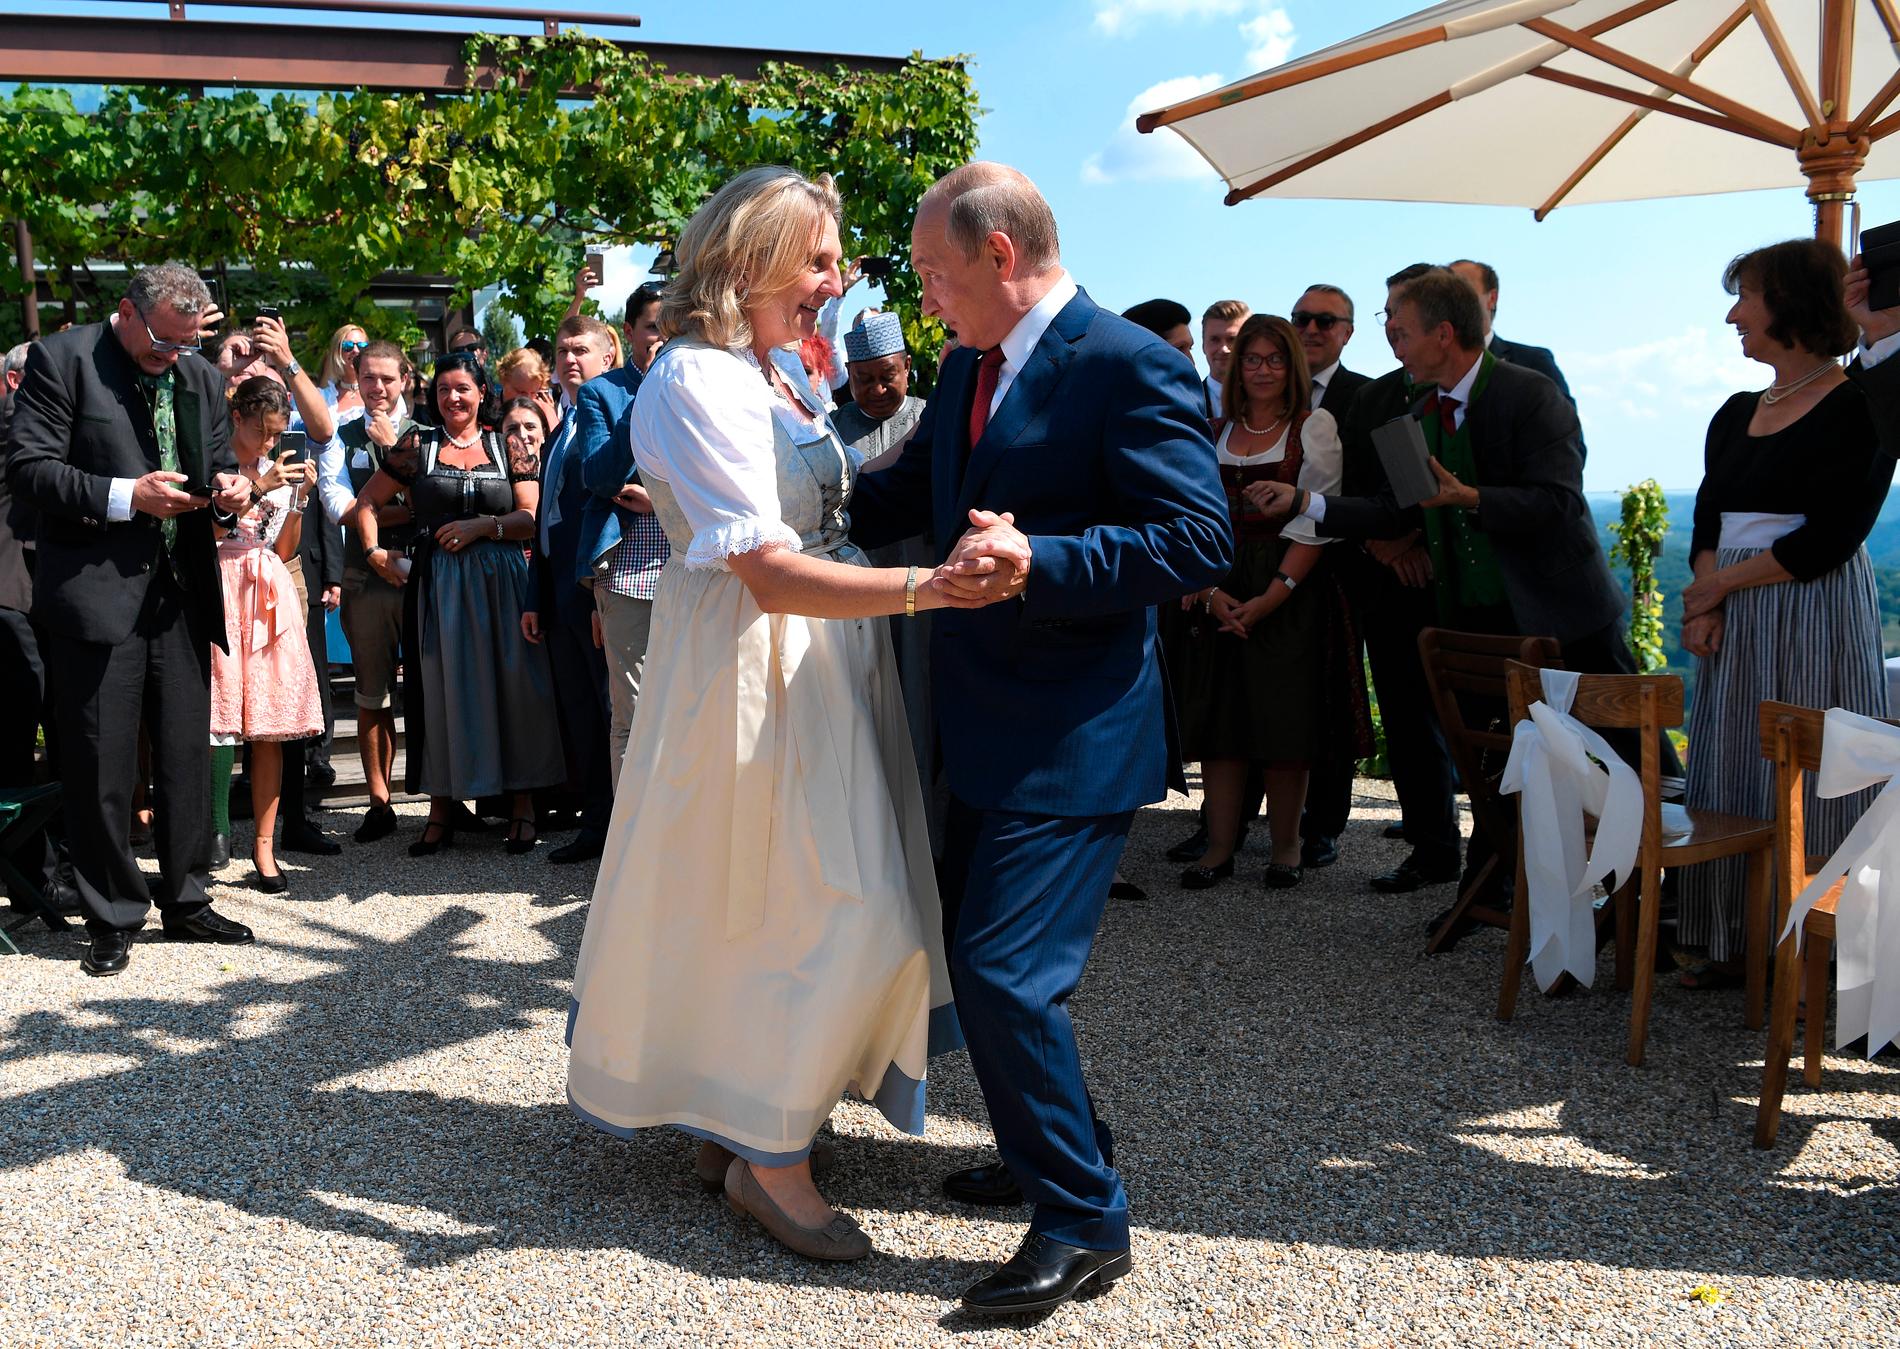 Vladimir Putin tar en svängom med bruden, Karin Kneissl, på bröllop i Gamlitz i södra Österrike.